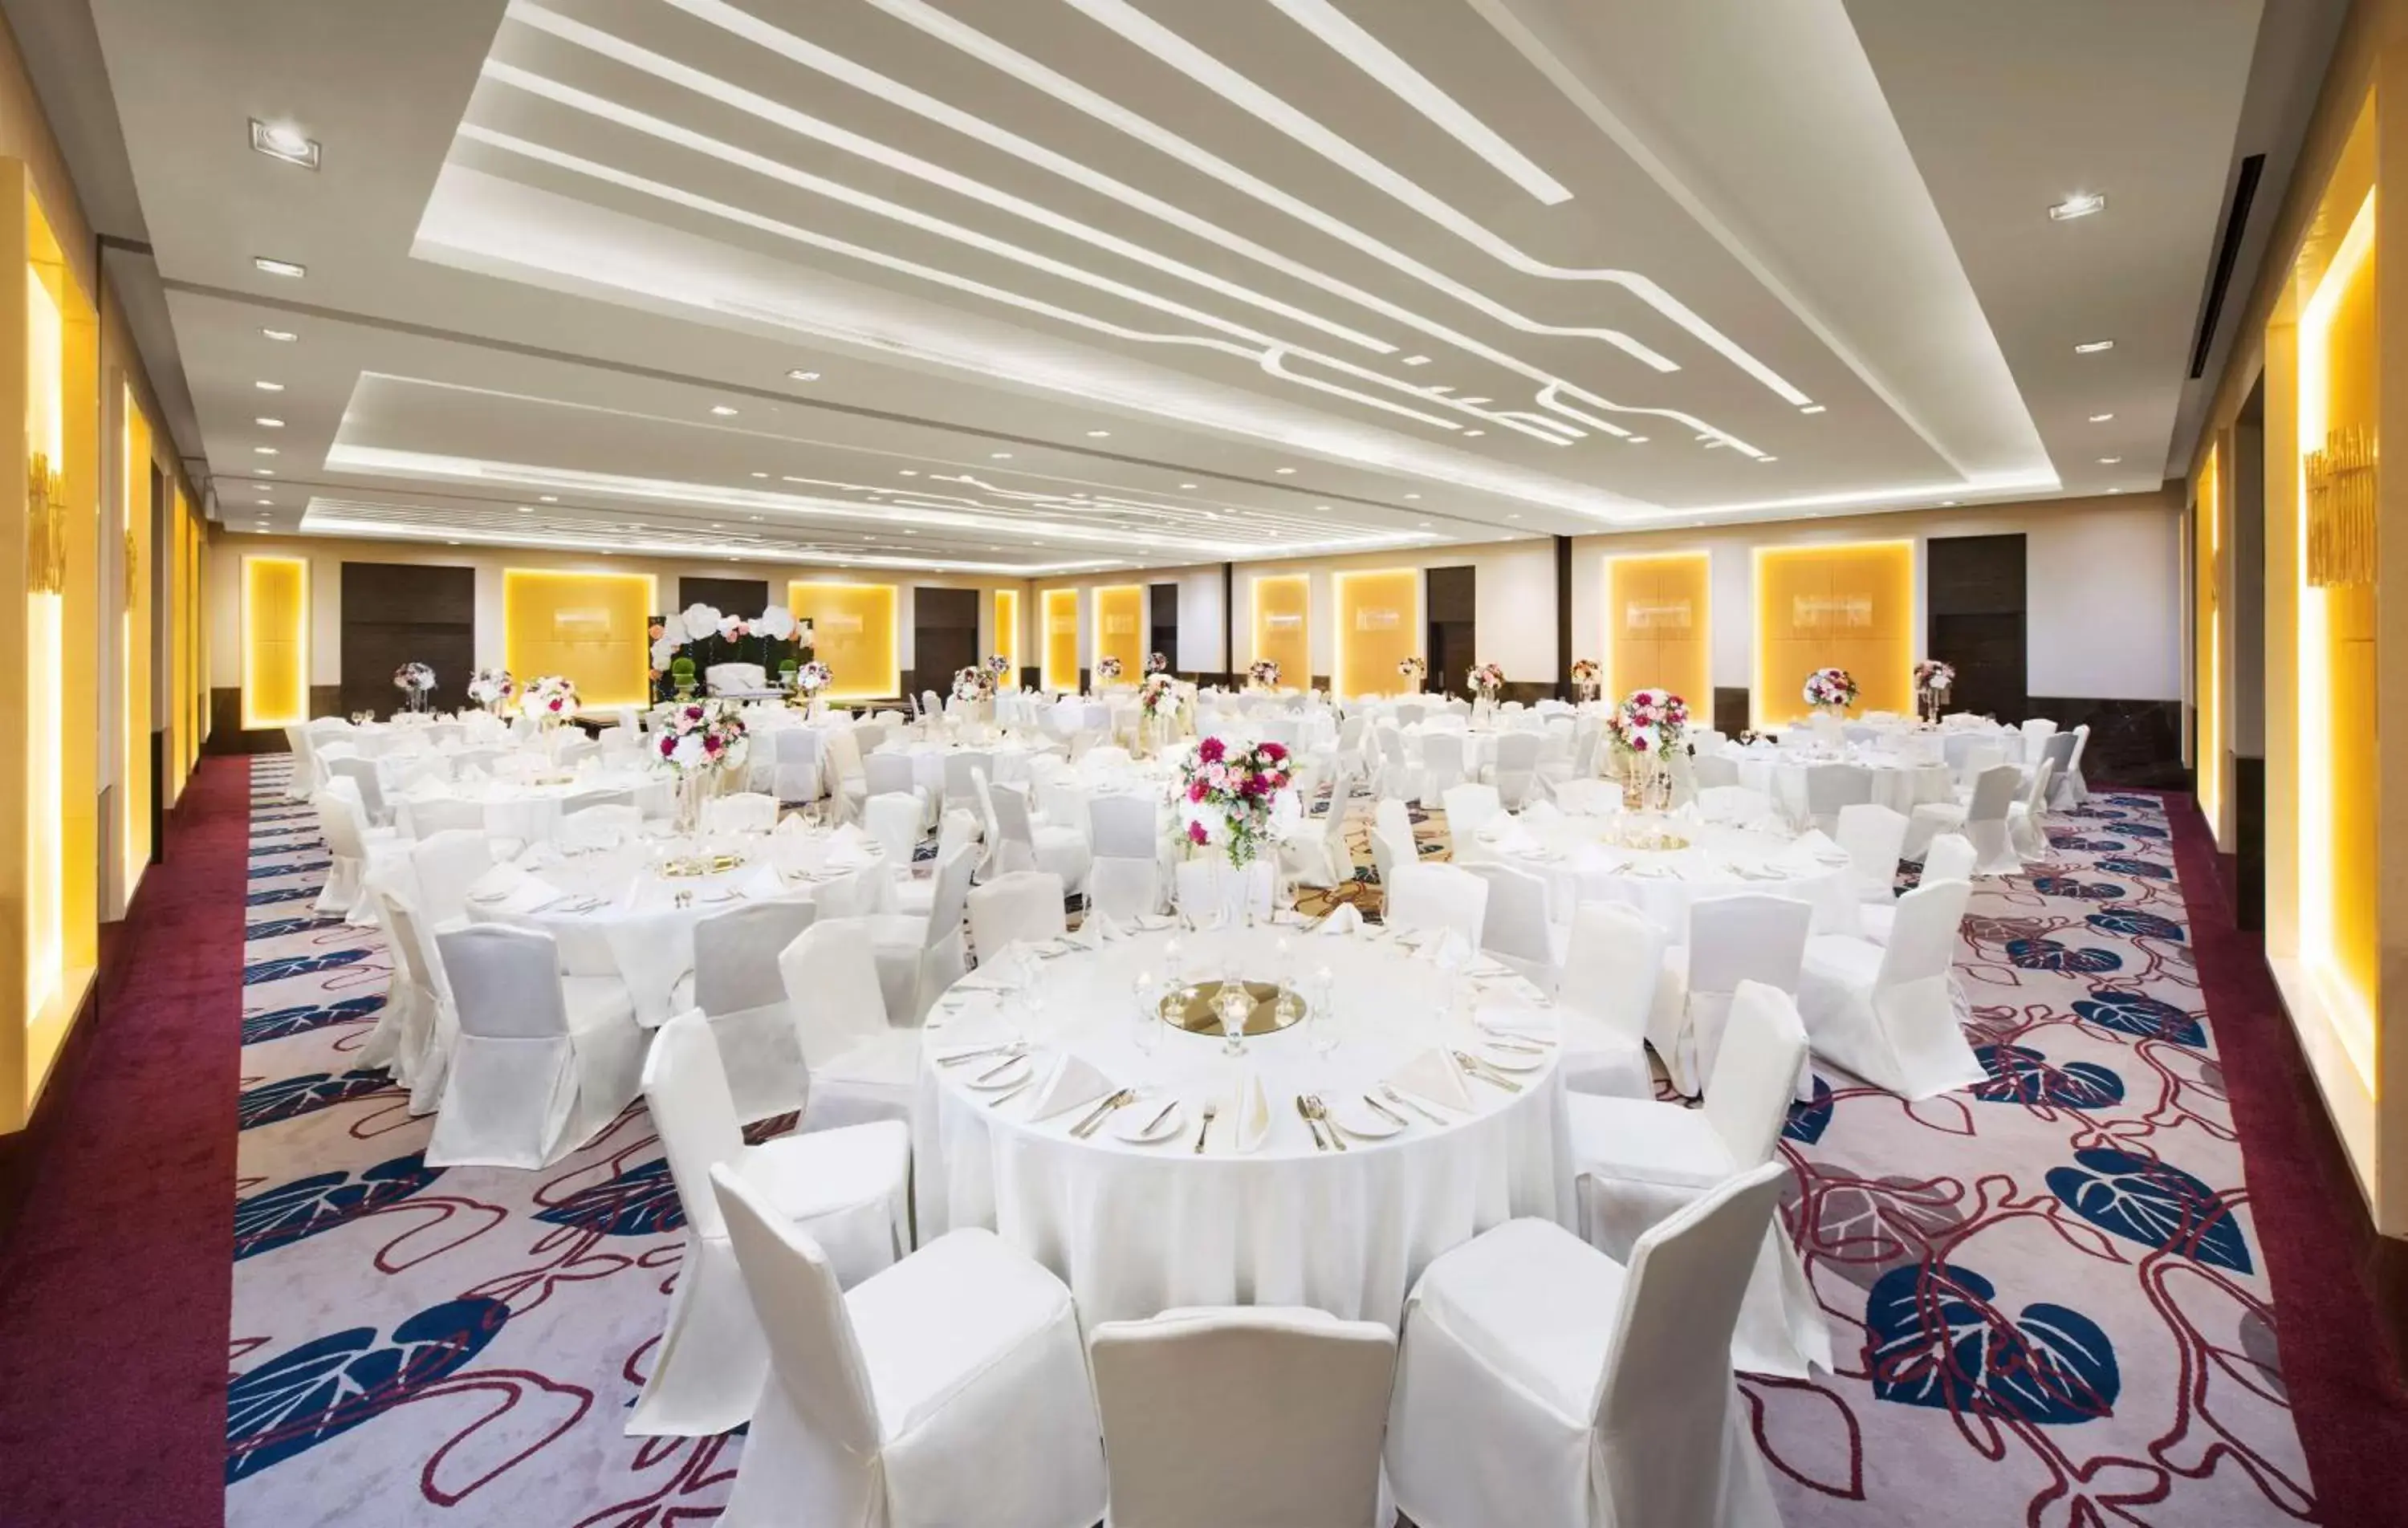 Banquet/Function facilities, Banquet Facilities in Hilton Garden Inn Ras Al Khaimah